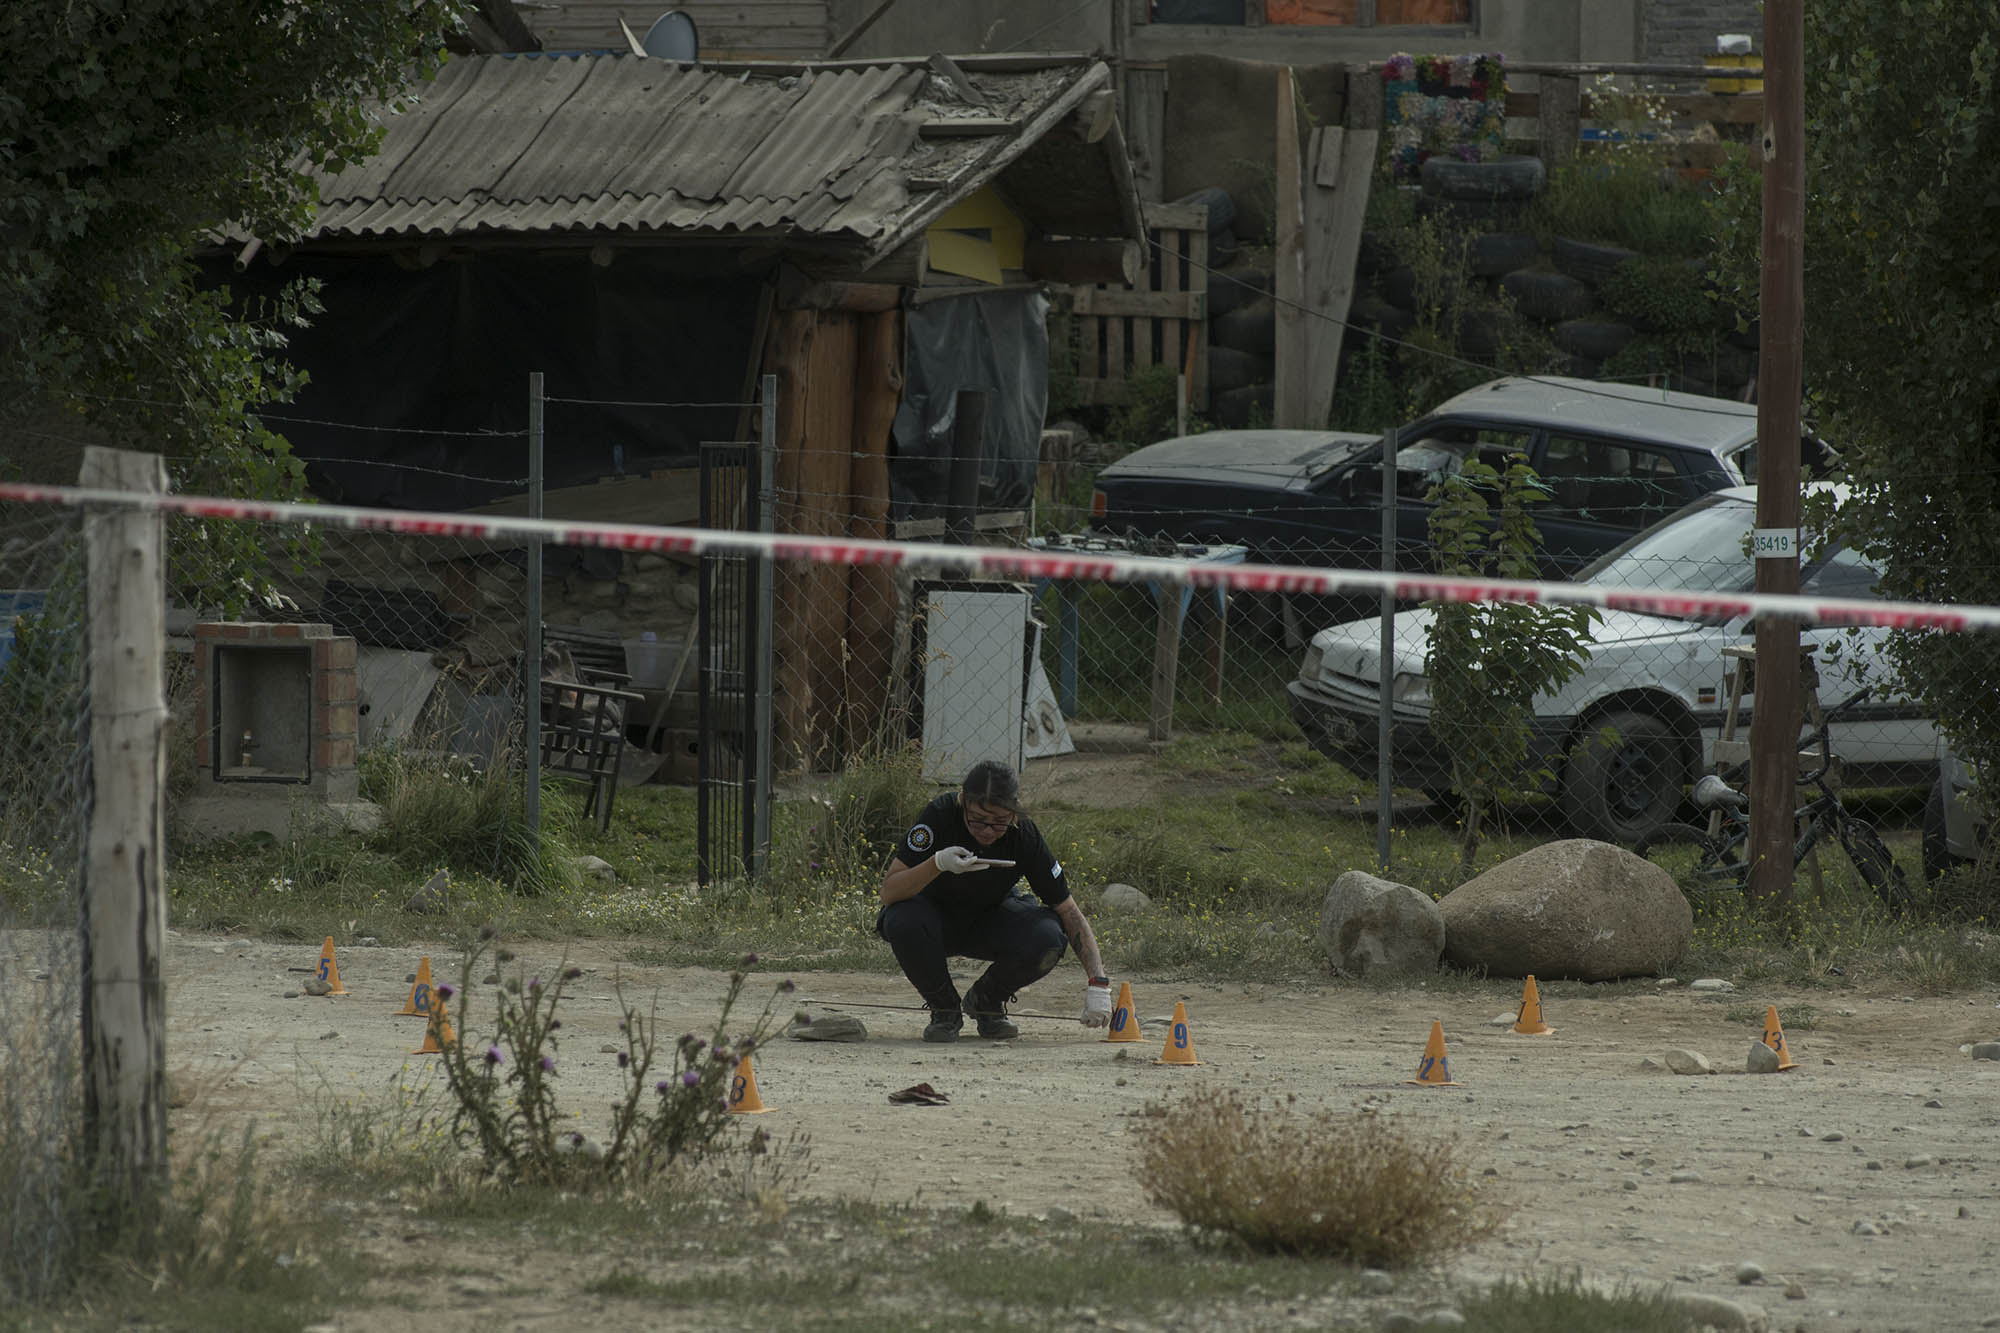 Peritos trabajan en el sector donde ocurrió el homicidio en el barrio Nahuel Hue de Bariloche. (Foto de Marcelo Martínez)